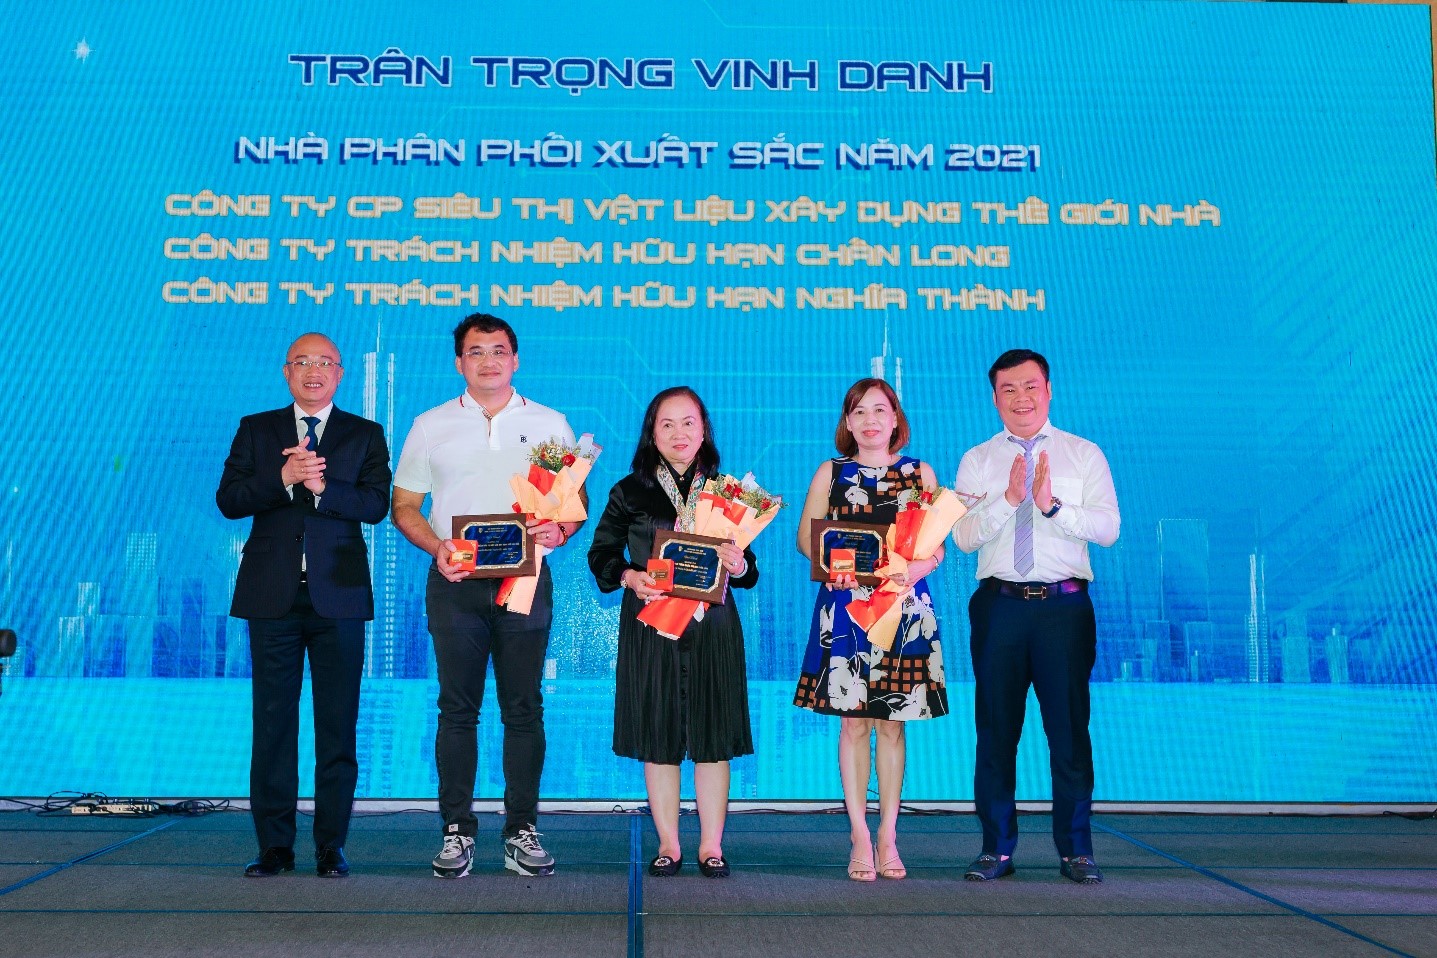 Chi nhánh phía Nam – Công ty CP Xi măng Cẩm Phả tổ chức Hội nghị khách hàng thường niên năm 2021